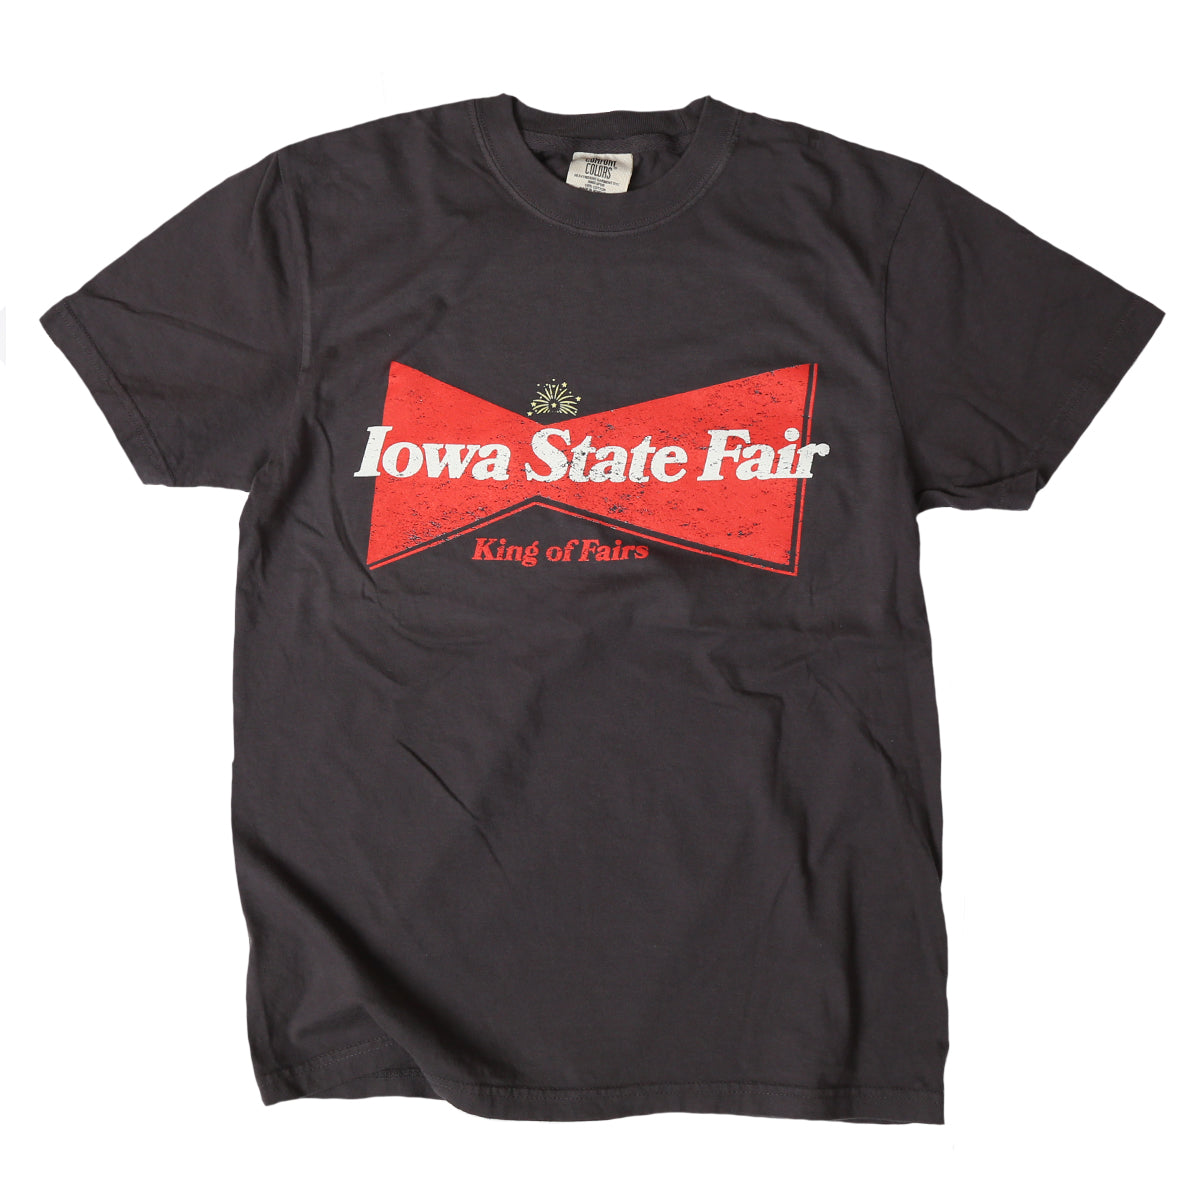 Iowa State Fair King of Fairs T-Shirt